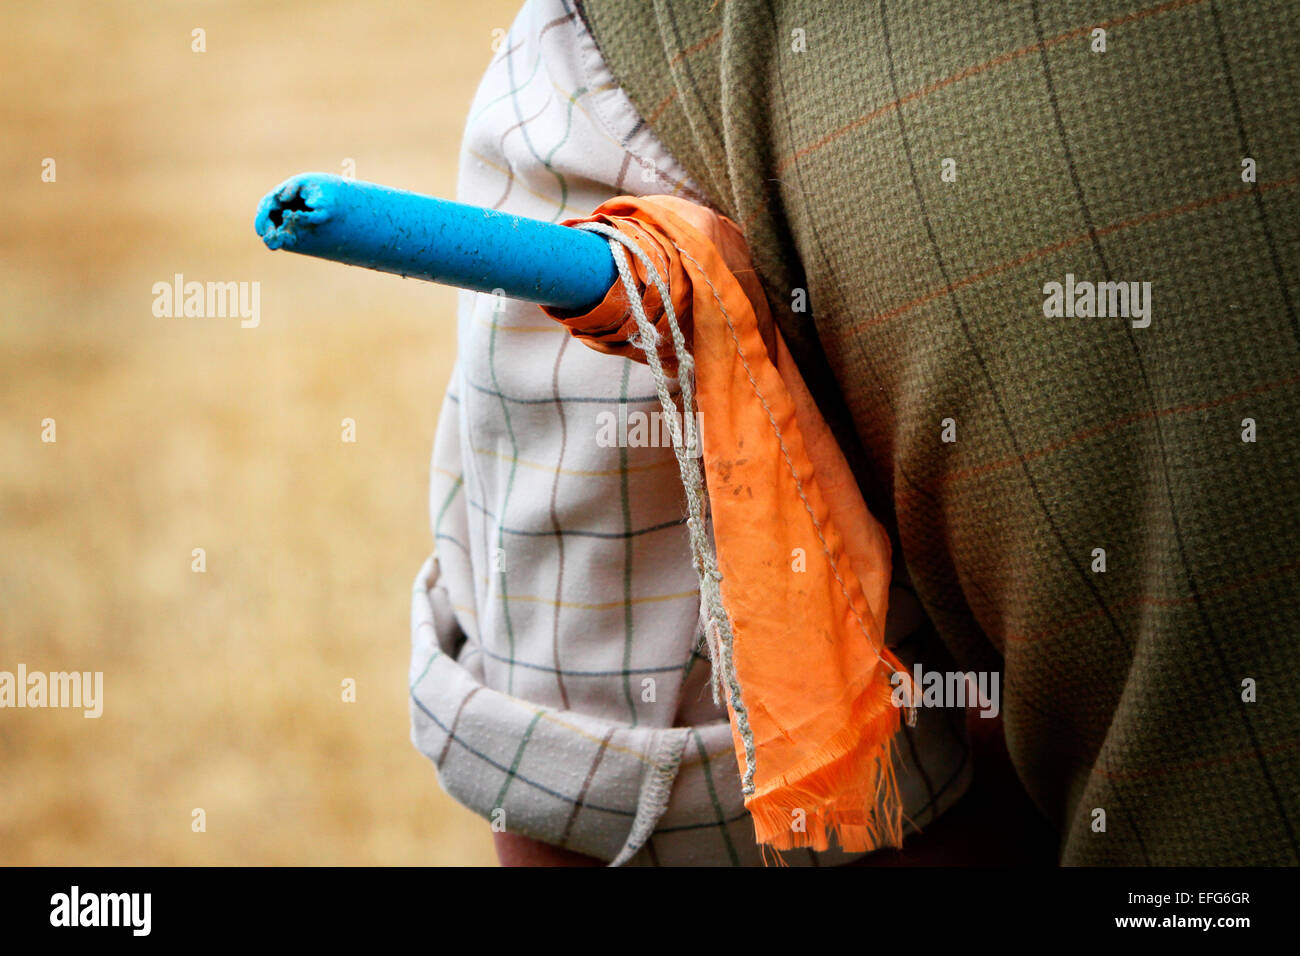 Jeu du hérisson mâle tir avec drapeau underarm, cropped portrait Banque D'Images